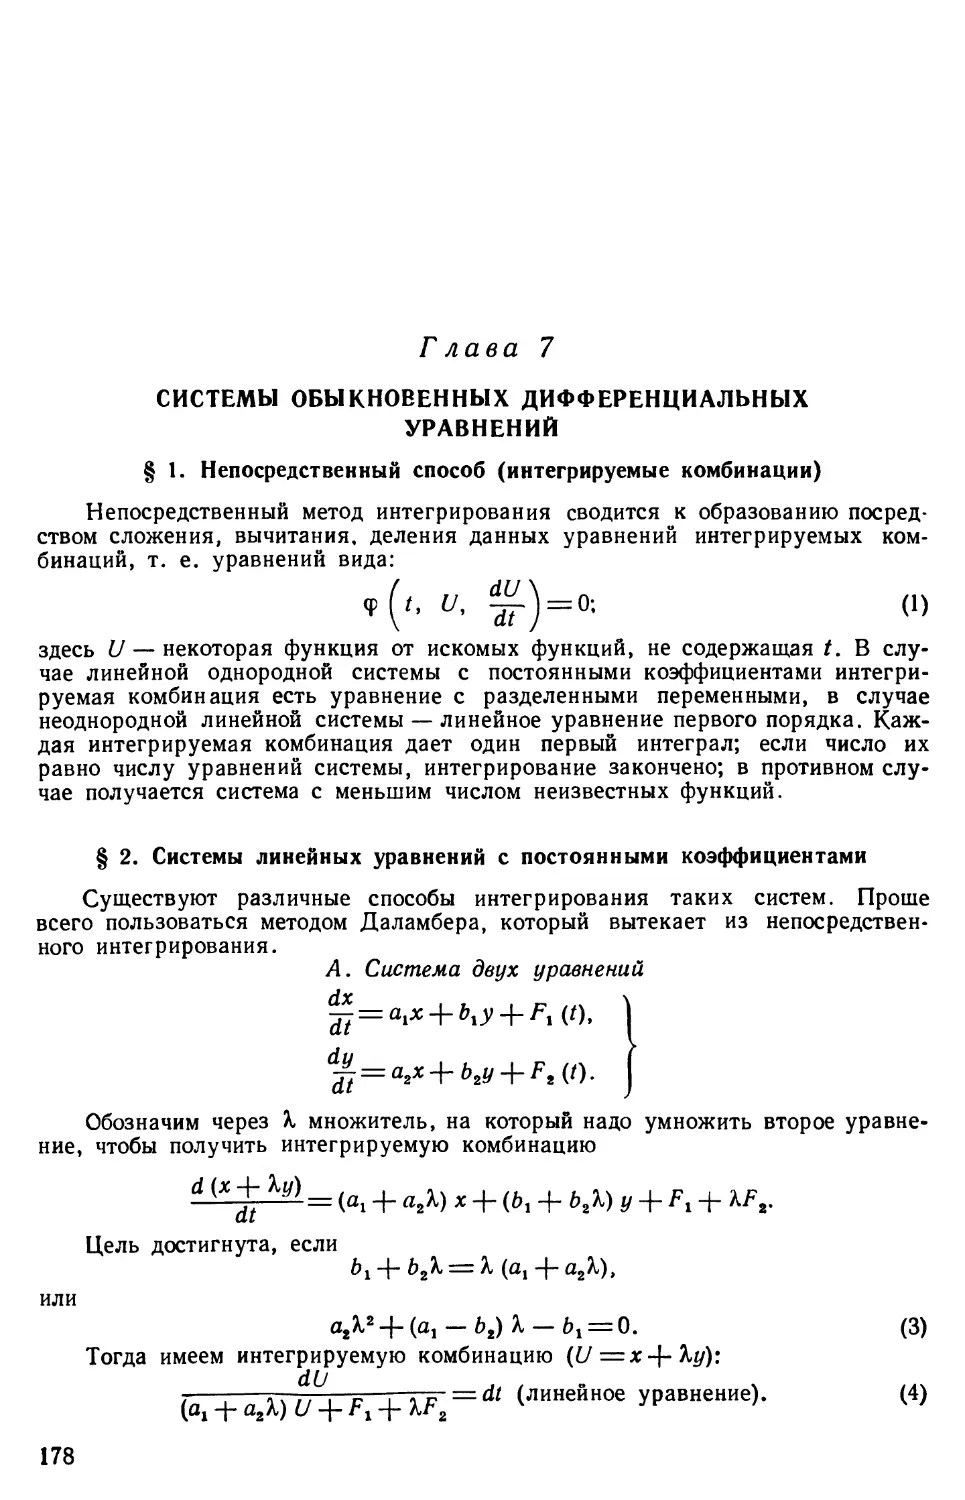 Глава 7. Системы обыкновенных дифференциальных уравнений
§ 2. Системы линейных уравнений с постоянными коэффициентами